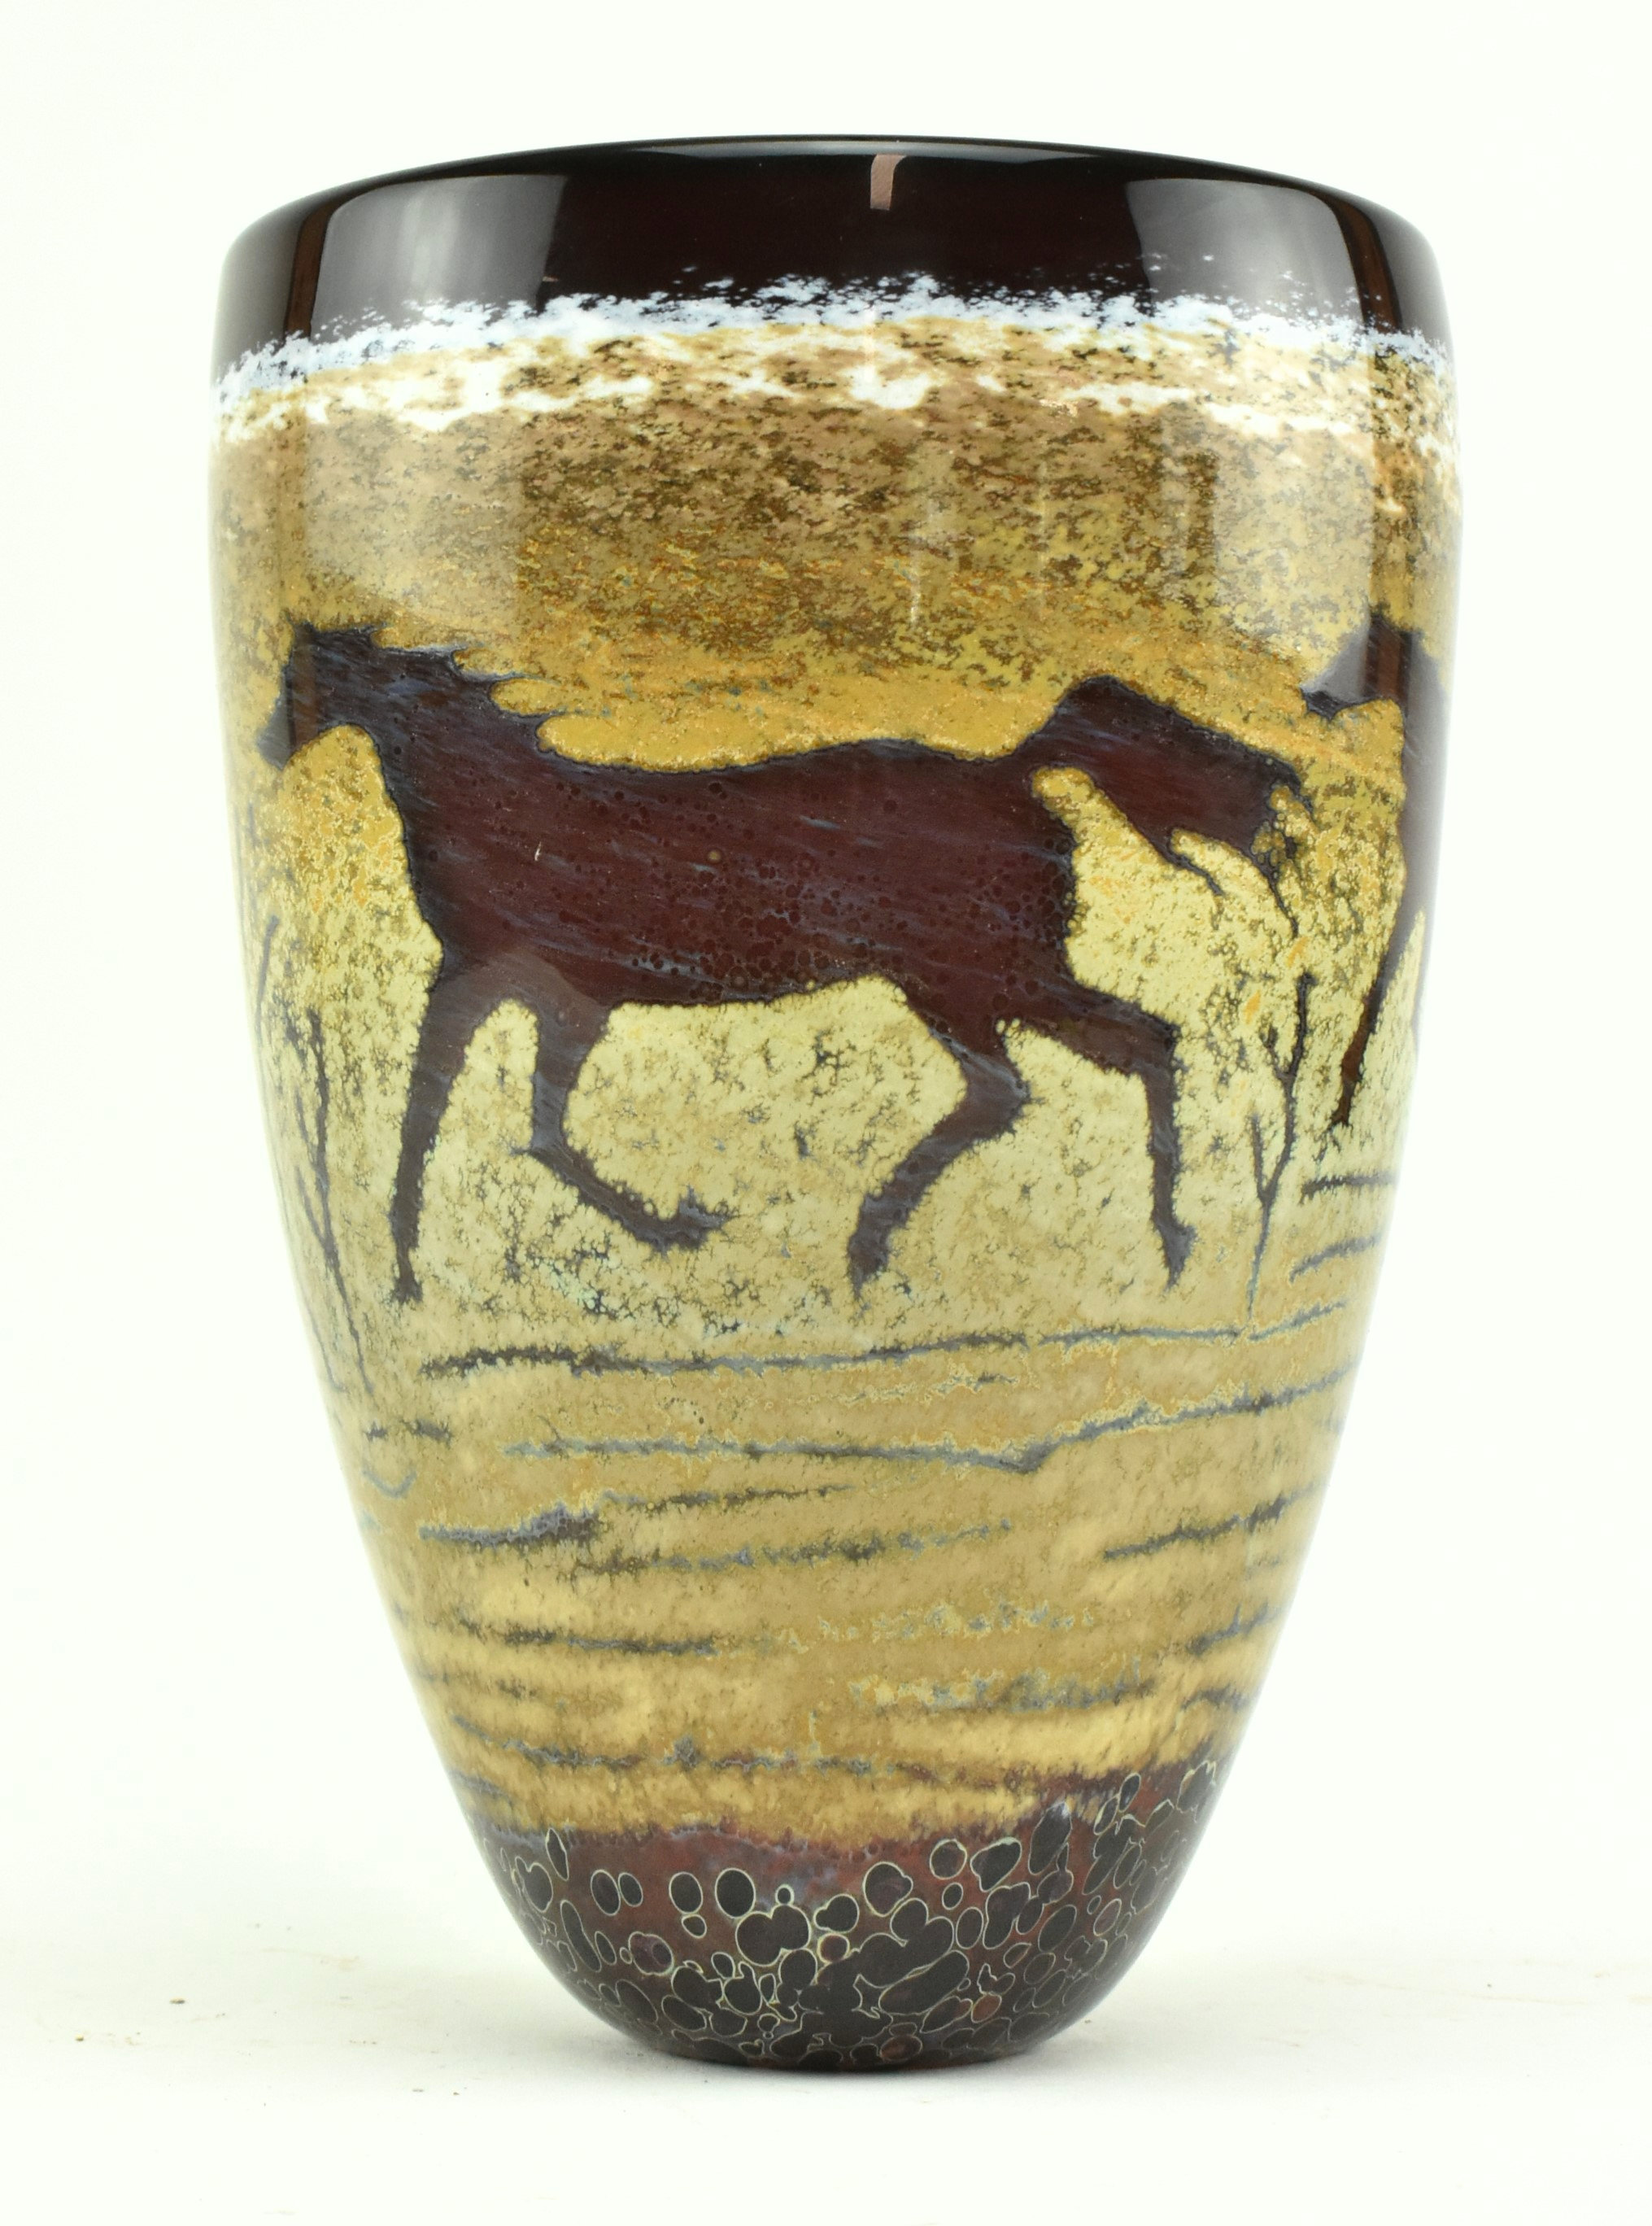 VINTAGE SIGNED STUDIO ART GLASS VASE WITH HORSE DESIGN